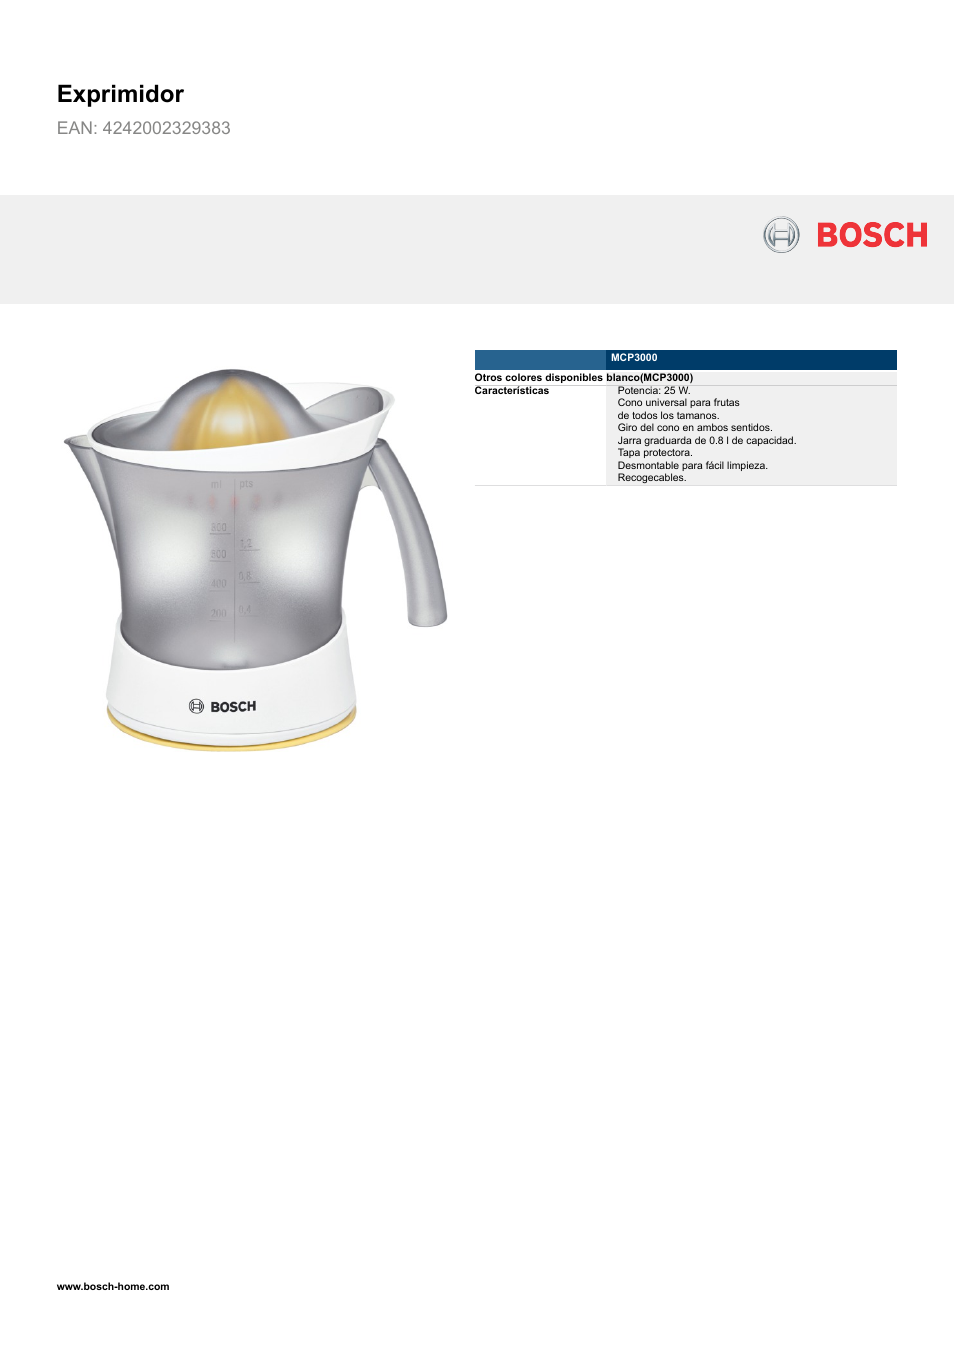 tema Cambiarse de ropa Fraternidad Bosch MCP3000 Exprimidor EAN 4242002329383 Manual del usuario | Páginas: 2